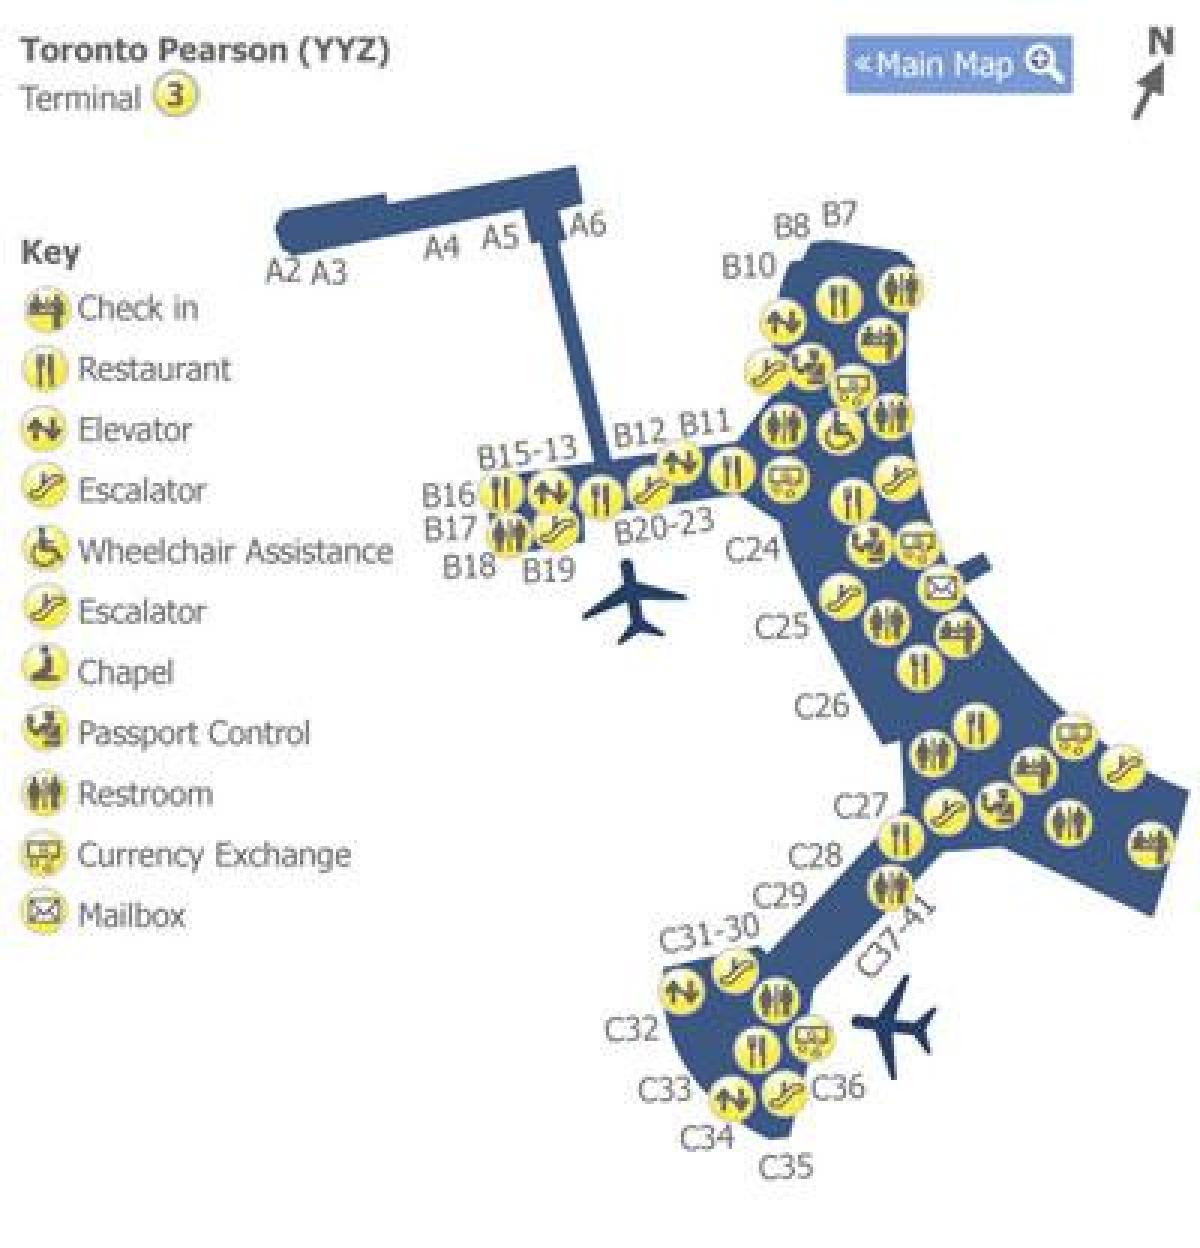 Χάρτης του Τορόντο Pearson airport terminal 3